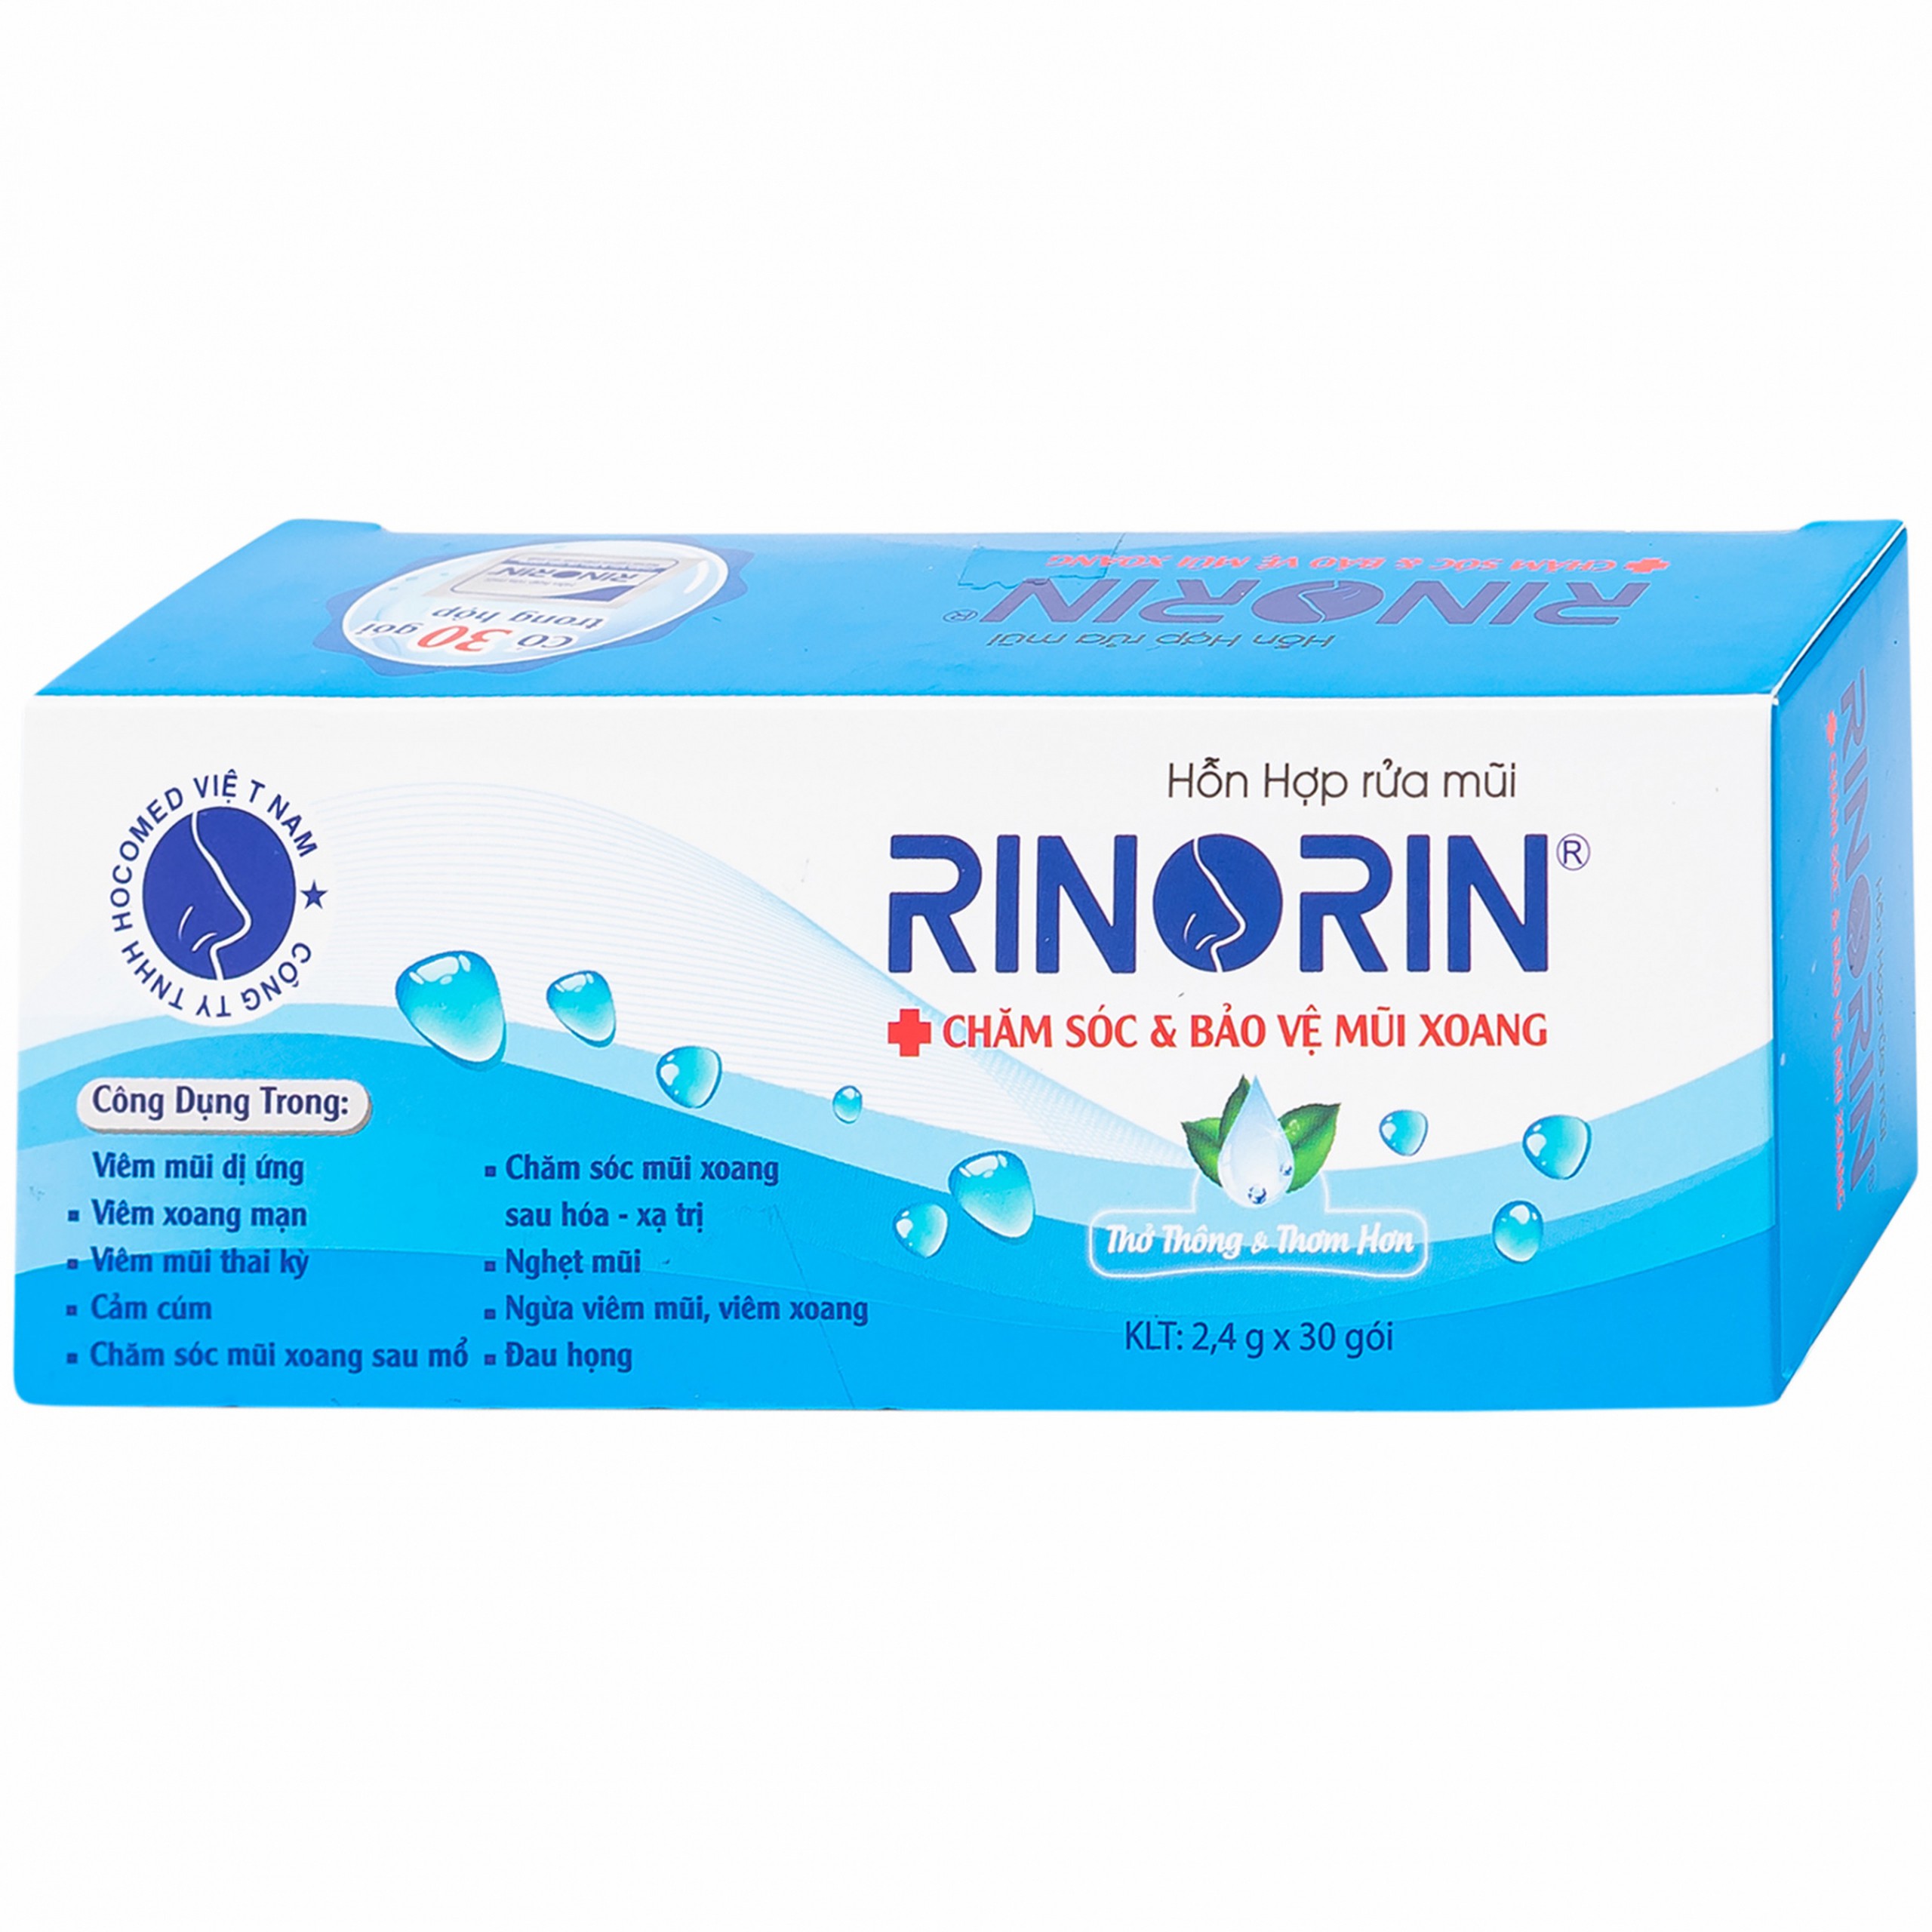 Hỗn hợp rửa mũi Rinorin chăm sóc và bảo vệ mũi xoang (30 gói)